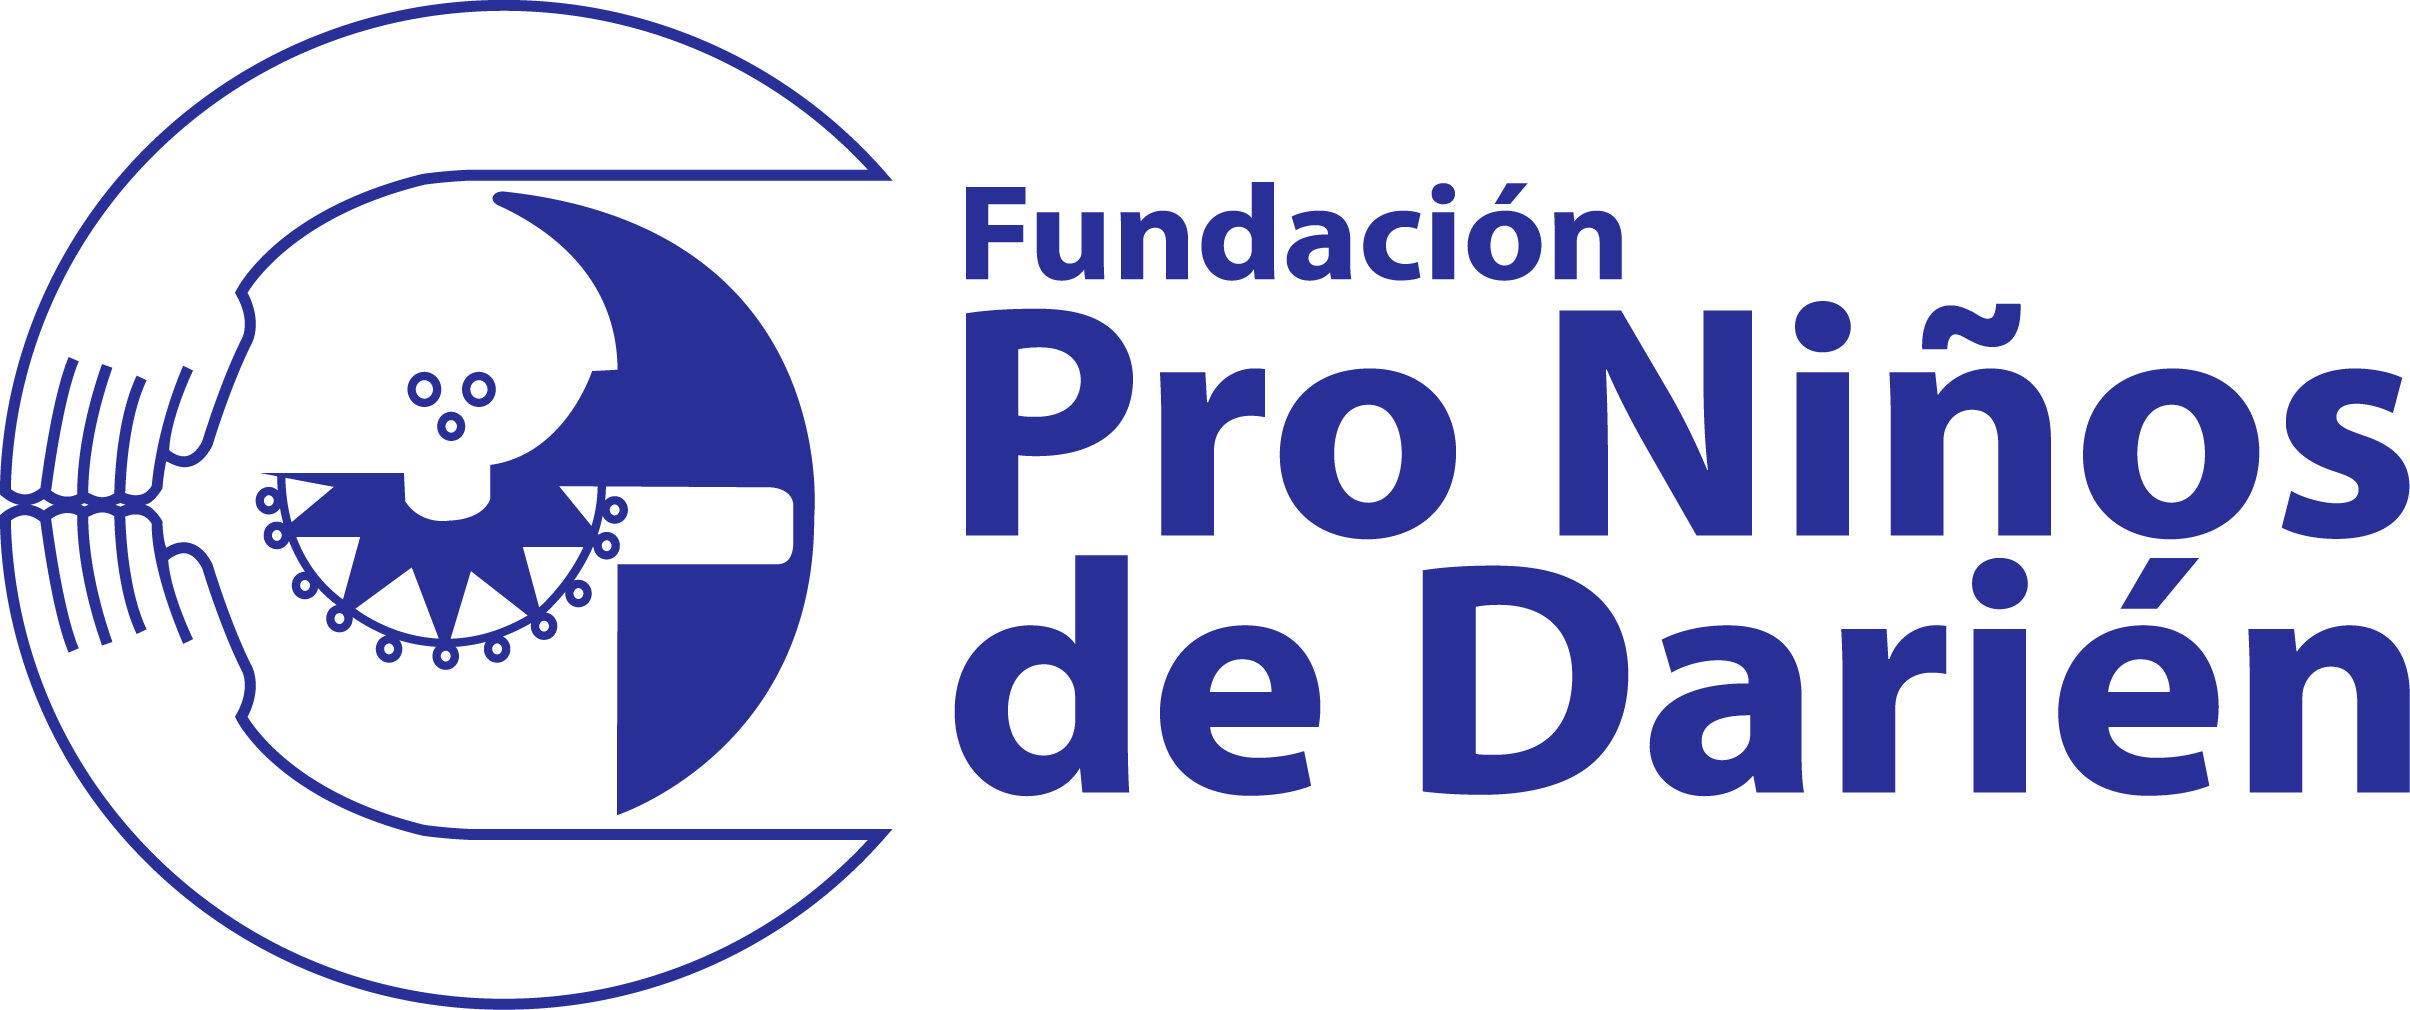 Fundación Pro Niños del Darién